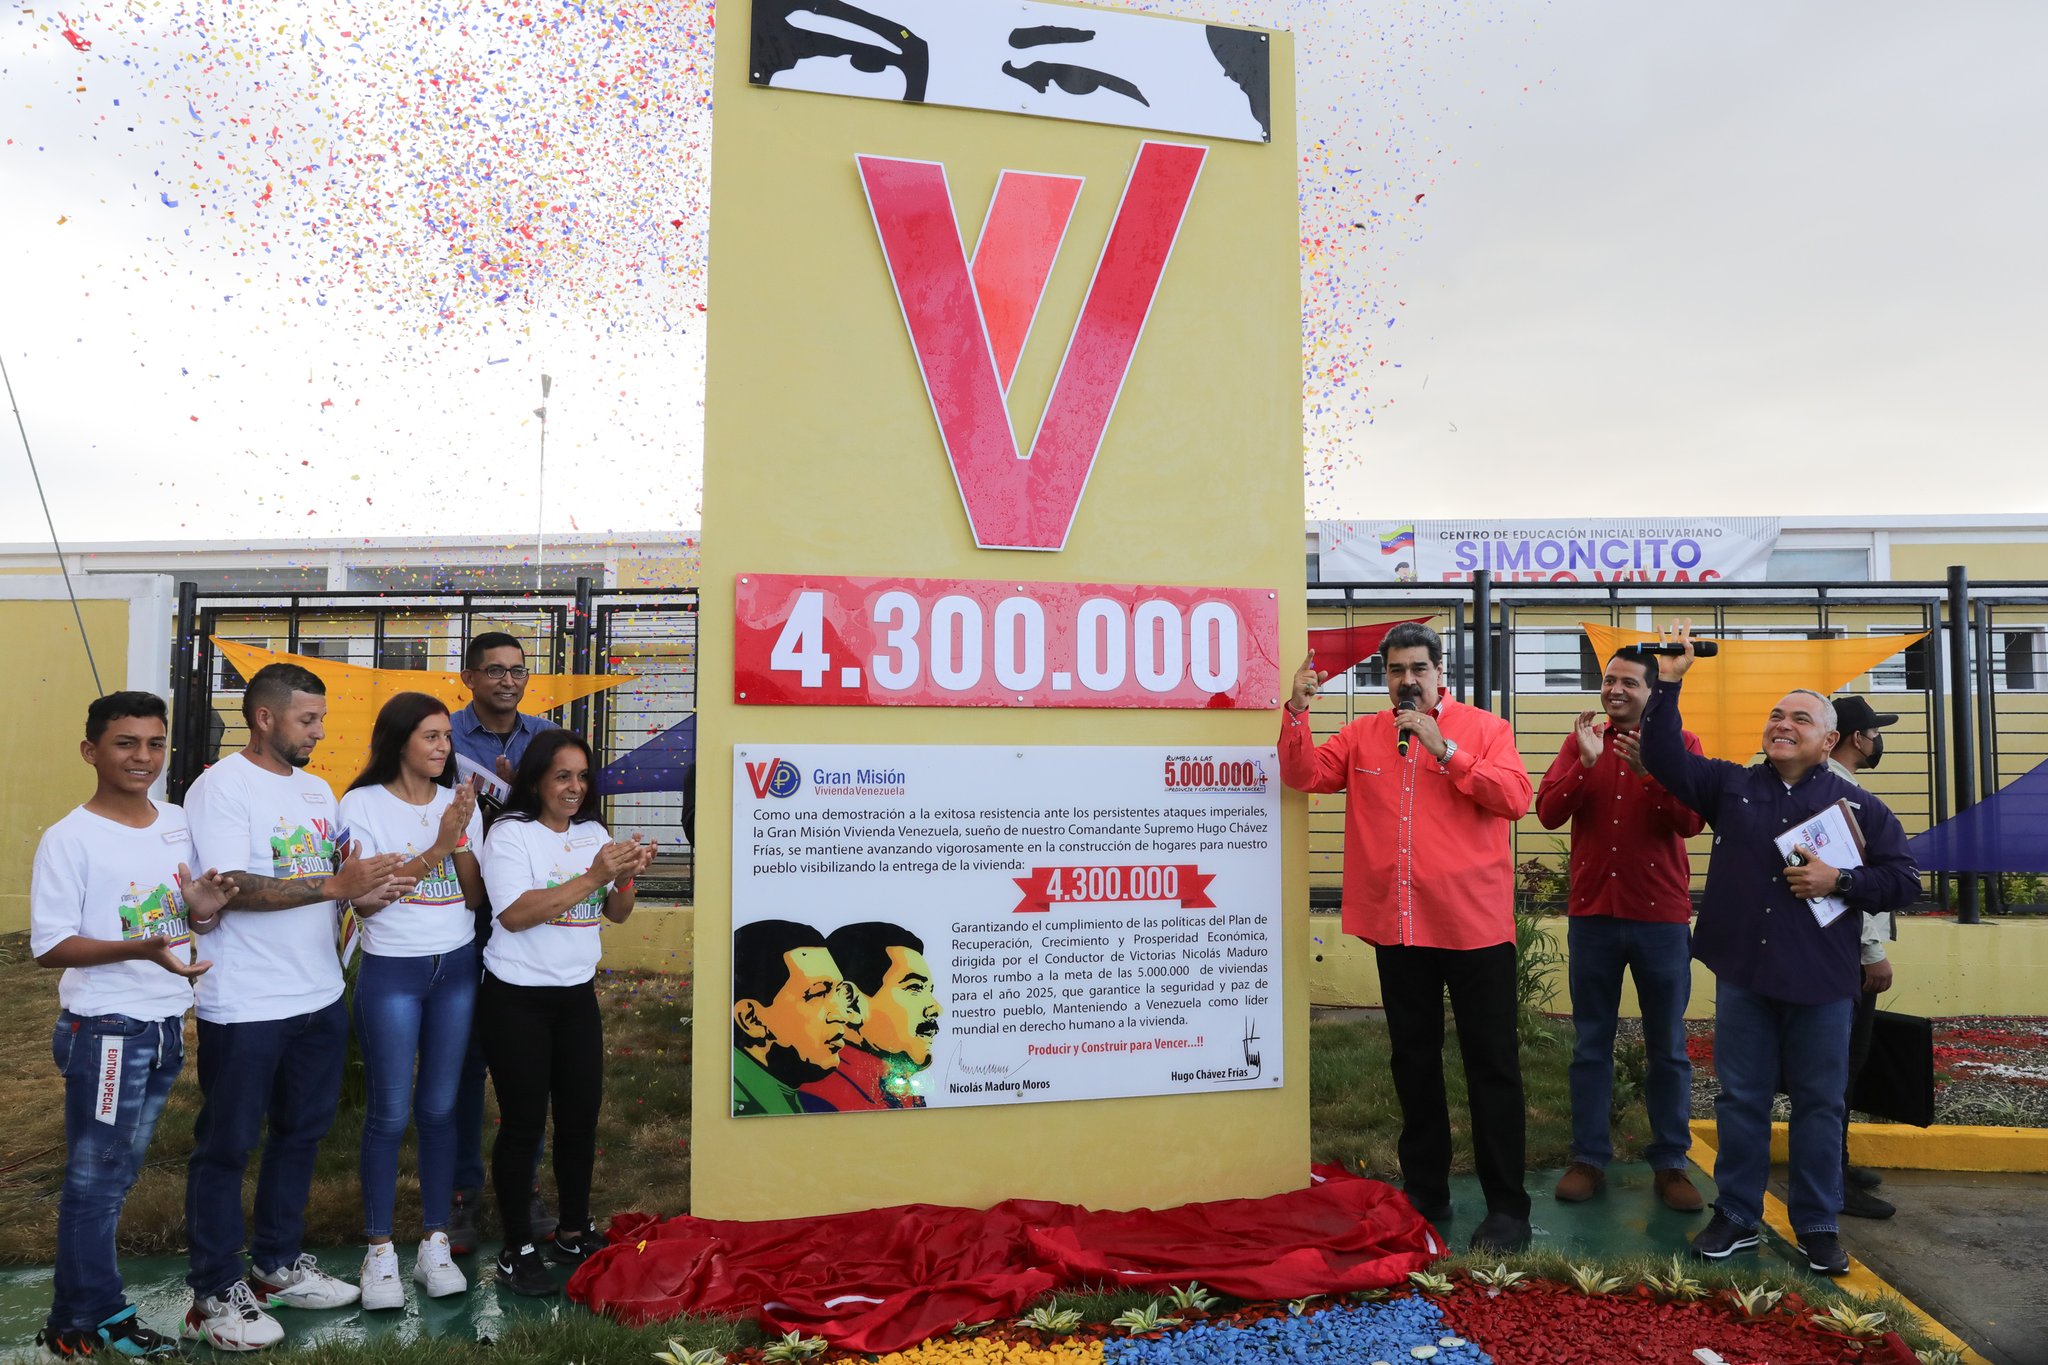 GMVV celebra Hito Histórico 4.300.000 con aprobación de más de 2 millones de euros para Las Tejerías